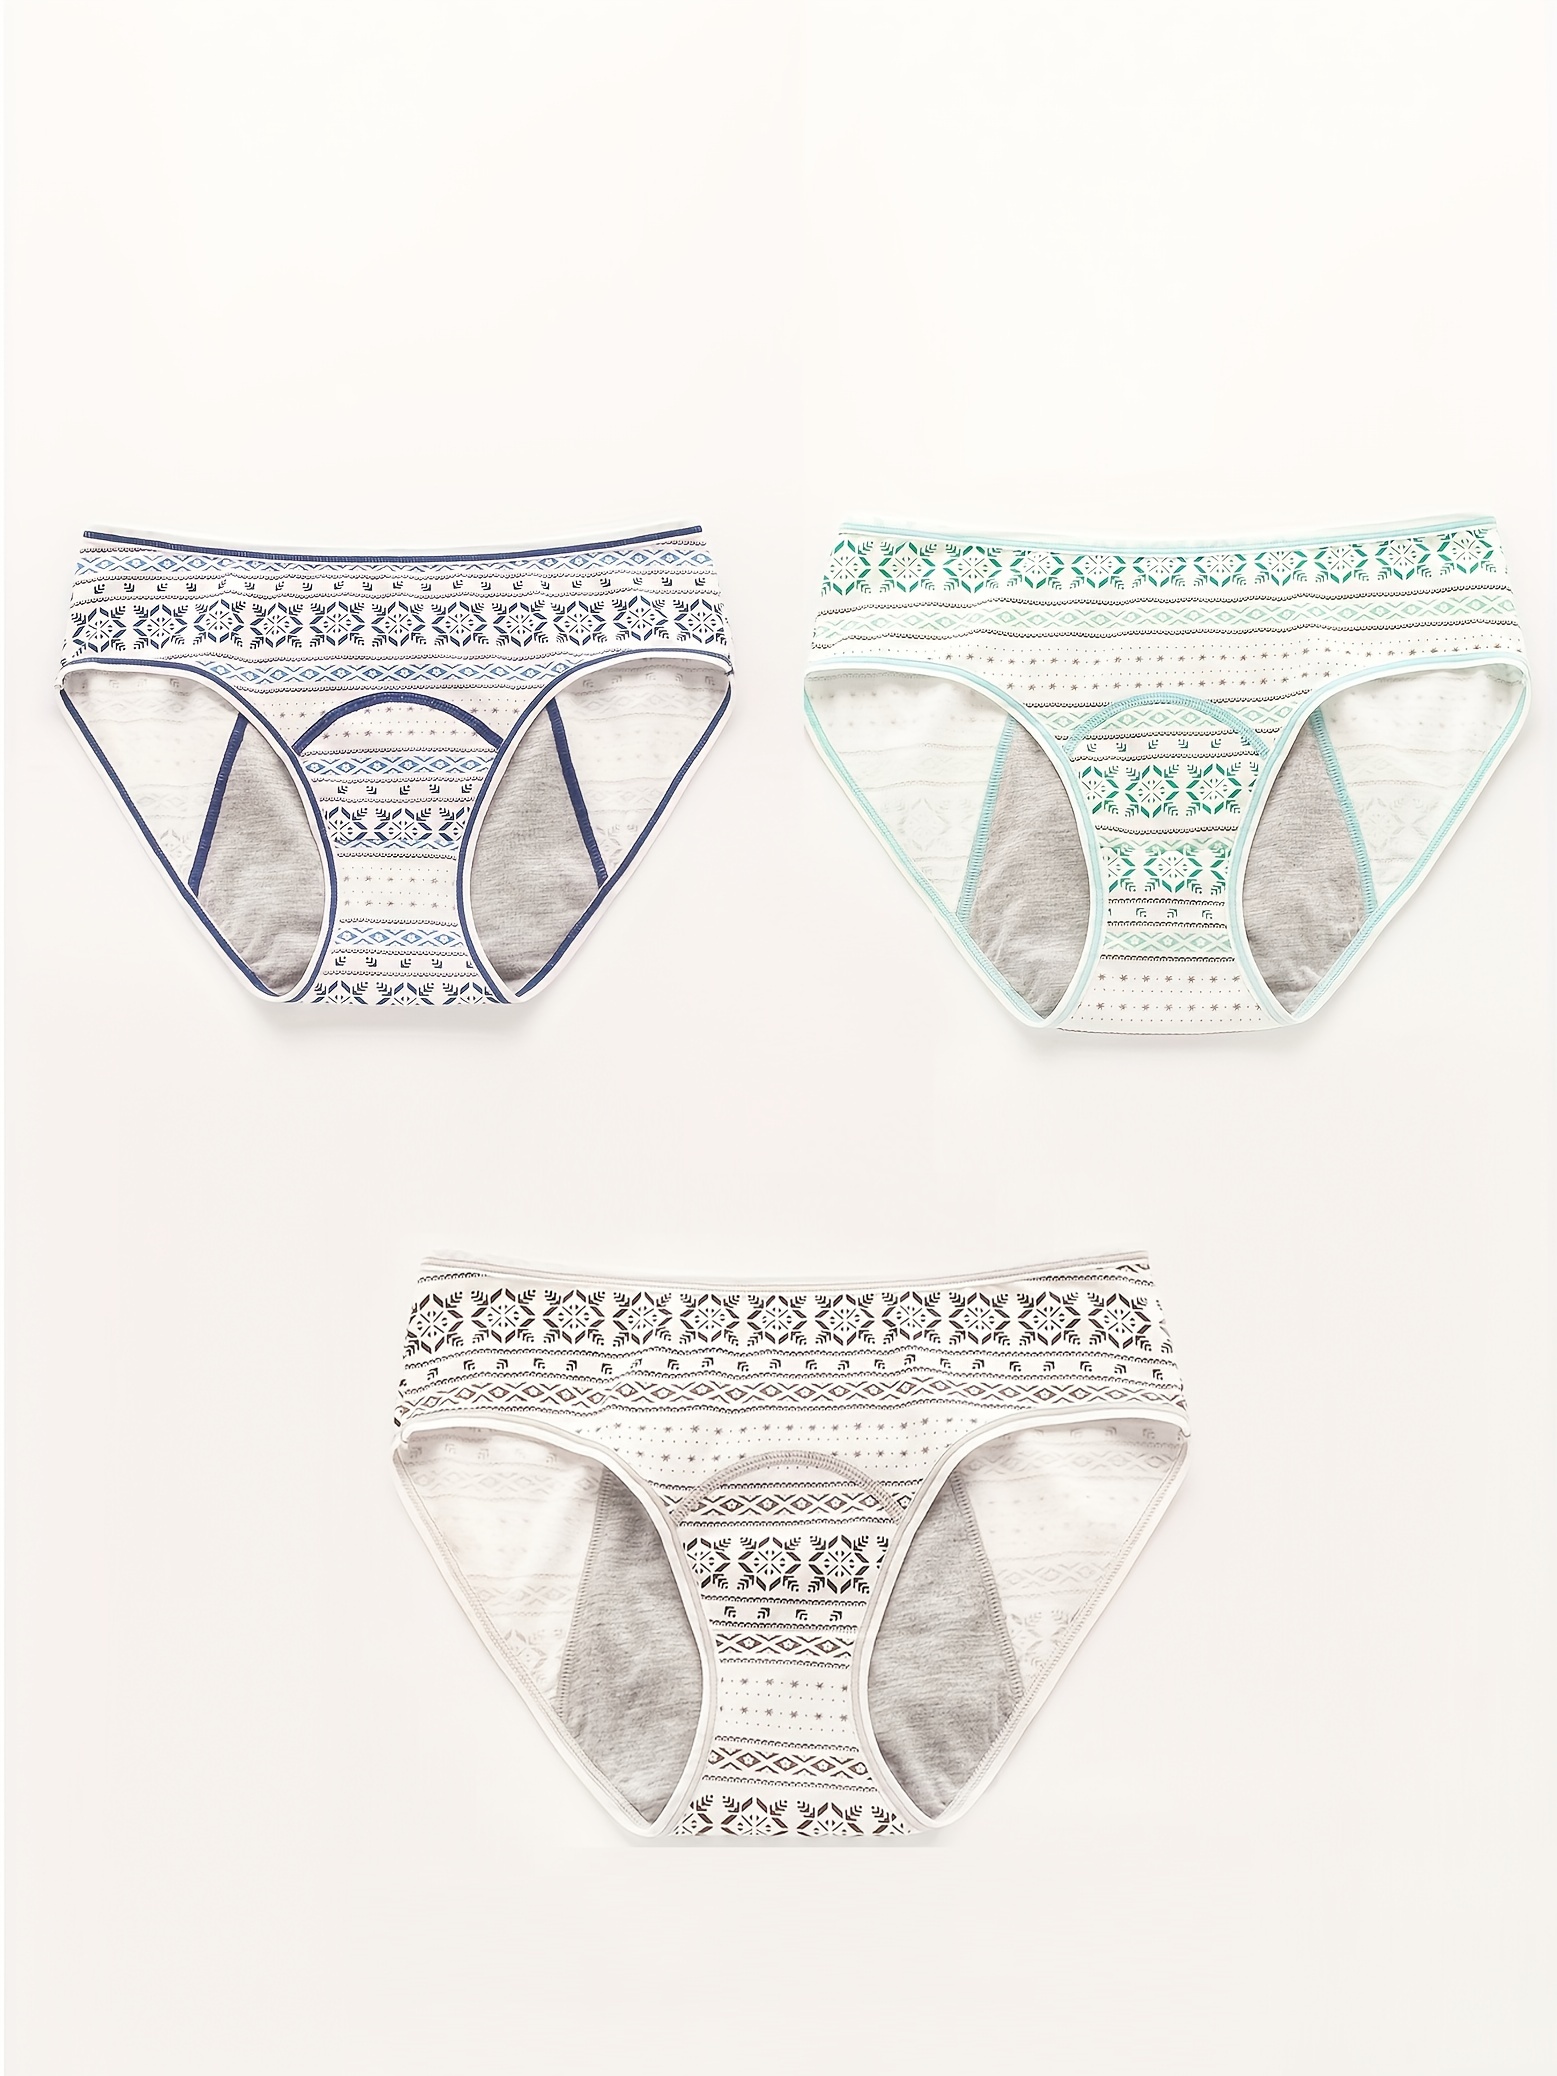 Girls Cute Printed Briefs Menstrual Period Panties Leak-Proof Knickers  Underwear